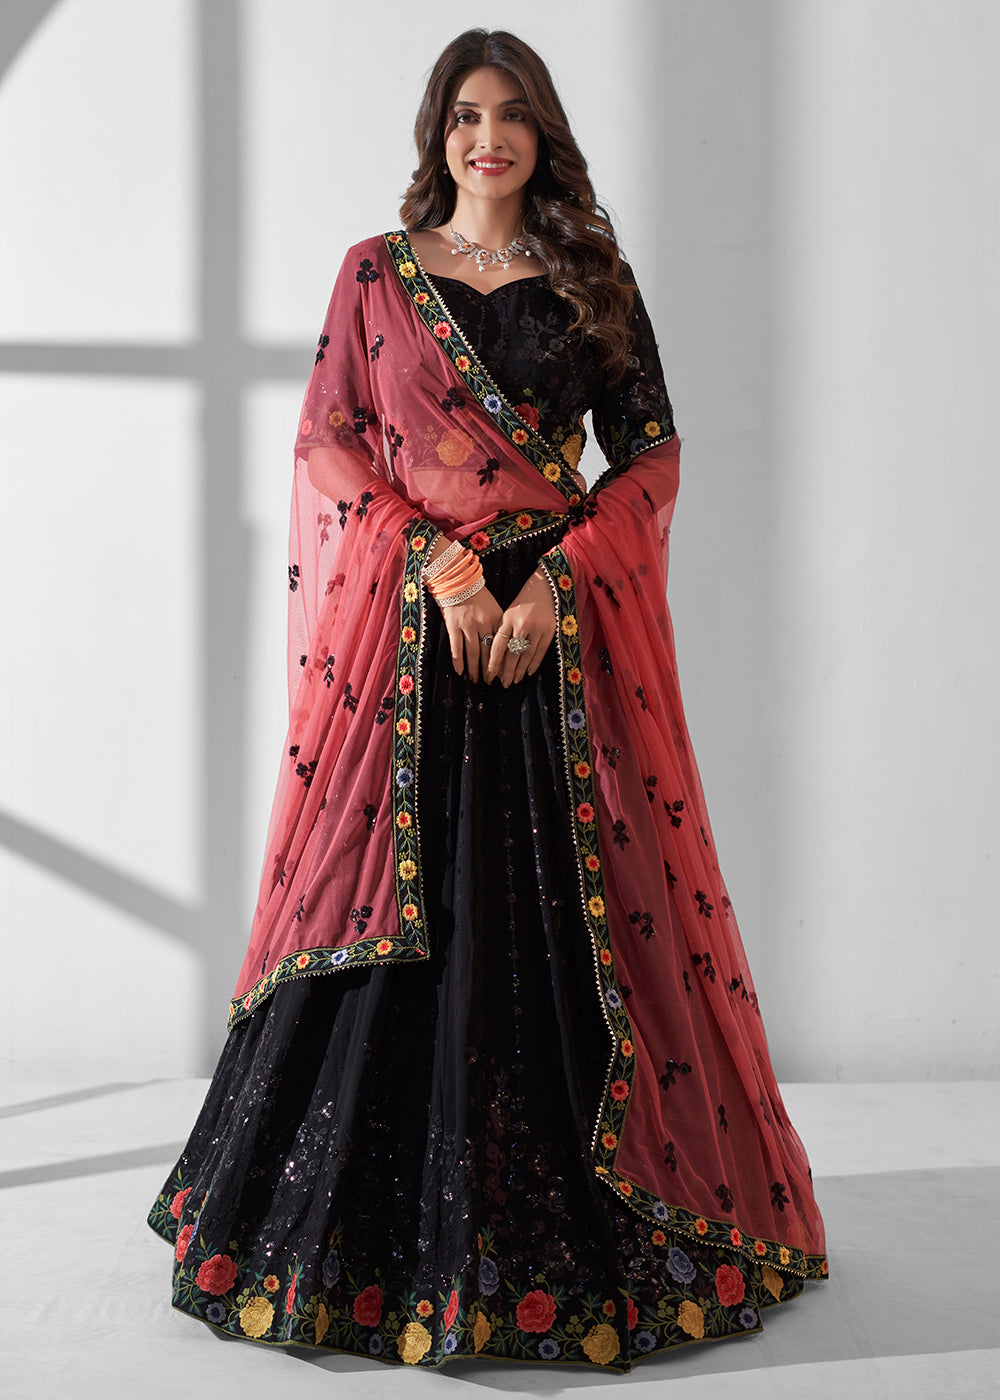 Buy Now Black Multi Embroidered Wedding Festive Lehenga Choli Online in USA, UK, Canada & Worldwide at Empress Clothing. 